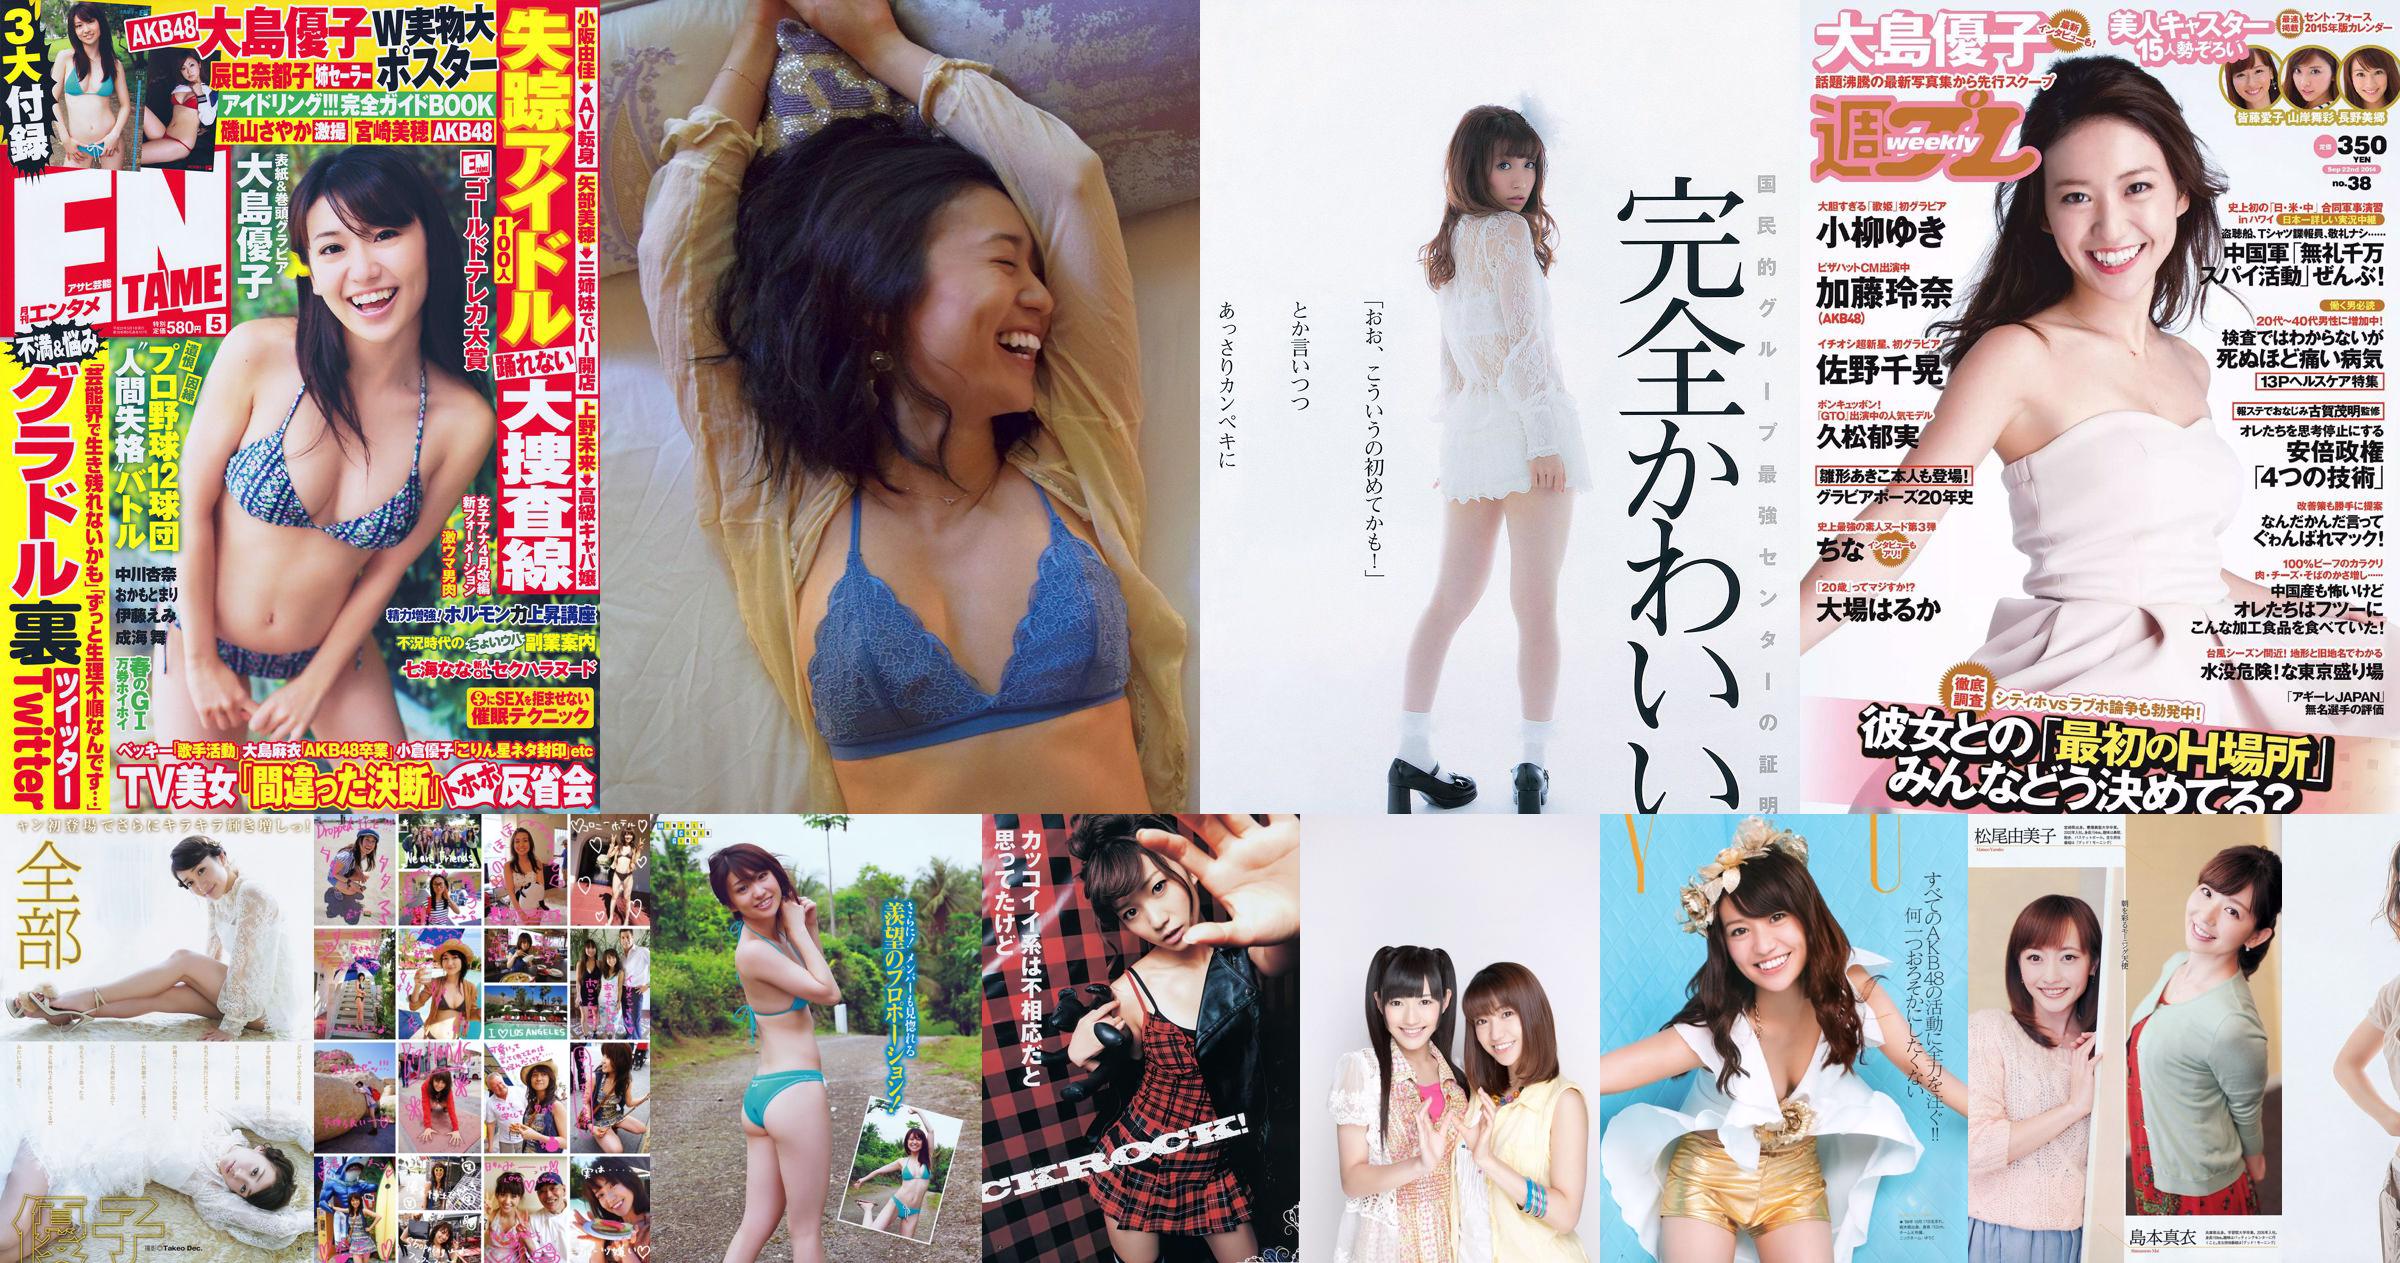 [Weekly Big Comic Spirits] Yuko Oshima 2013 No.03 Photo Magazine No.83dbfd Pagina 3